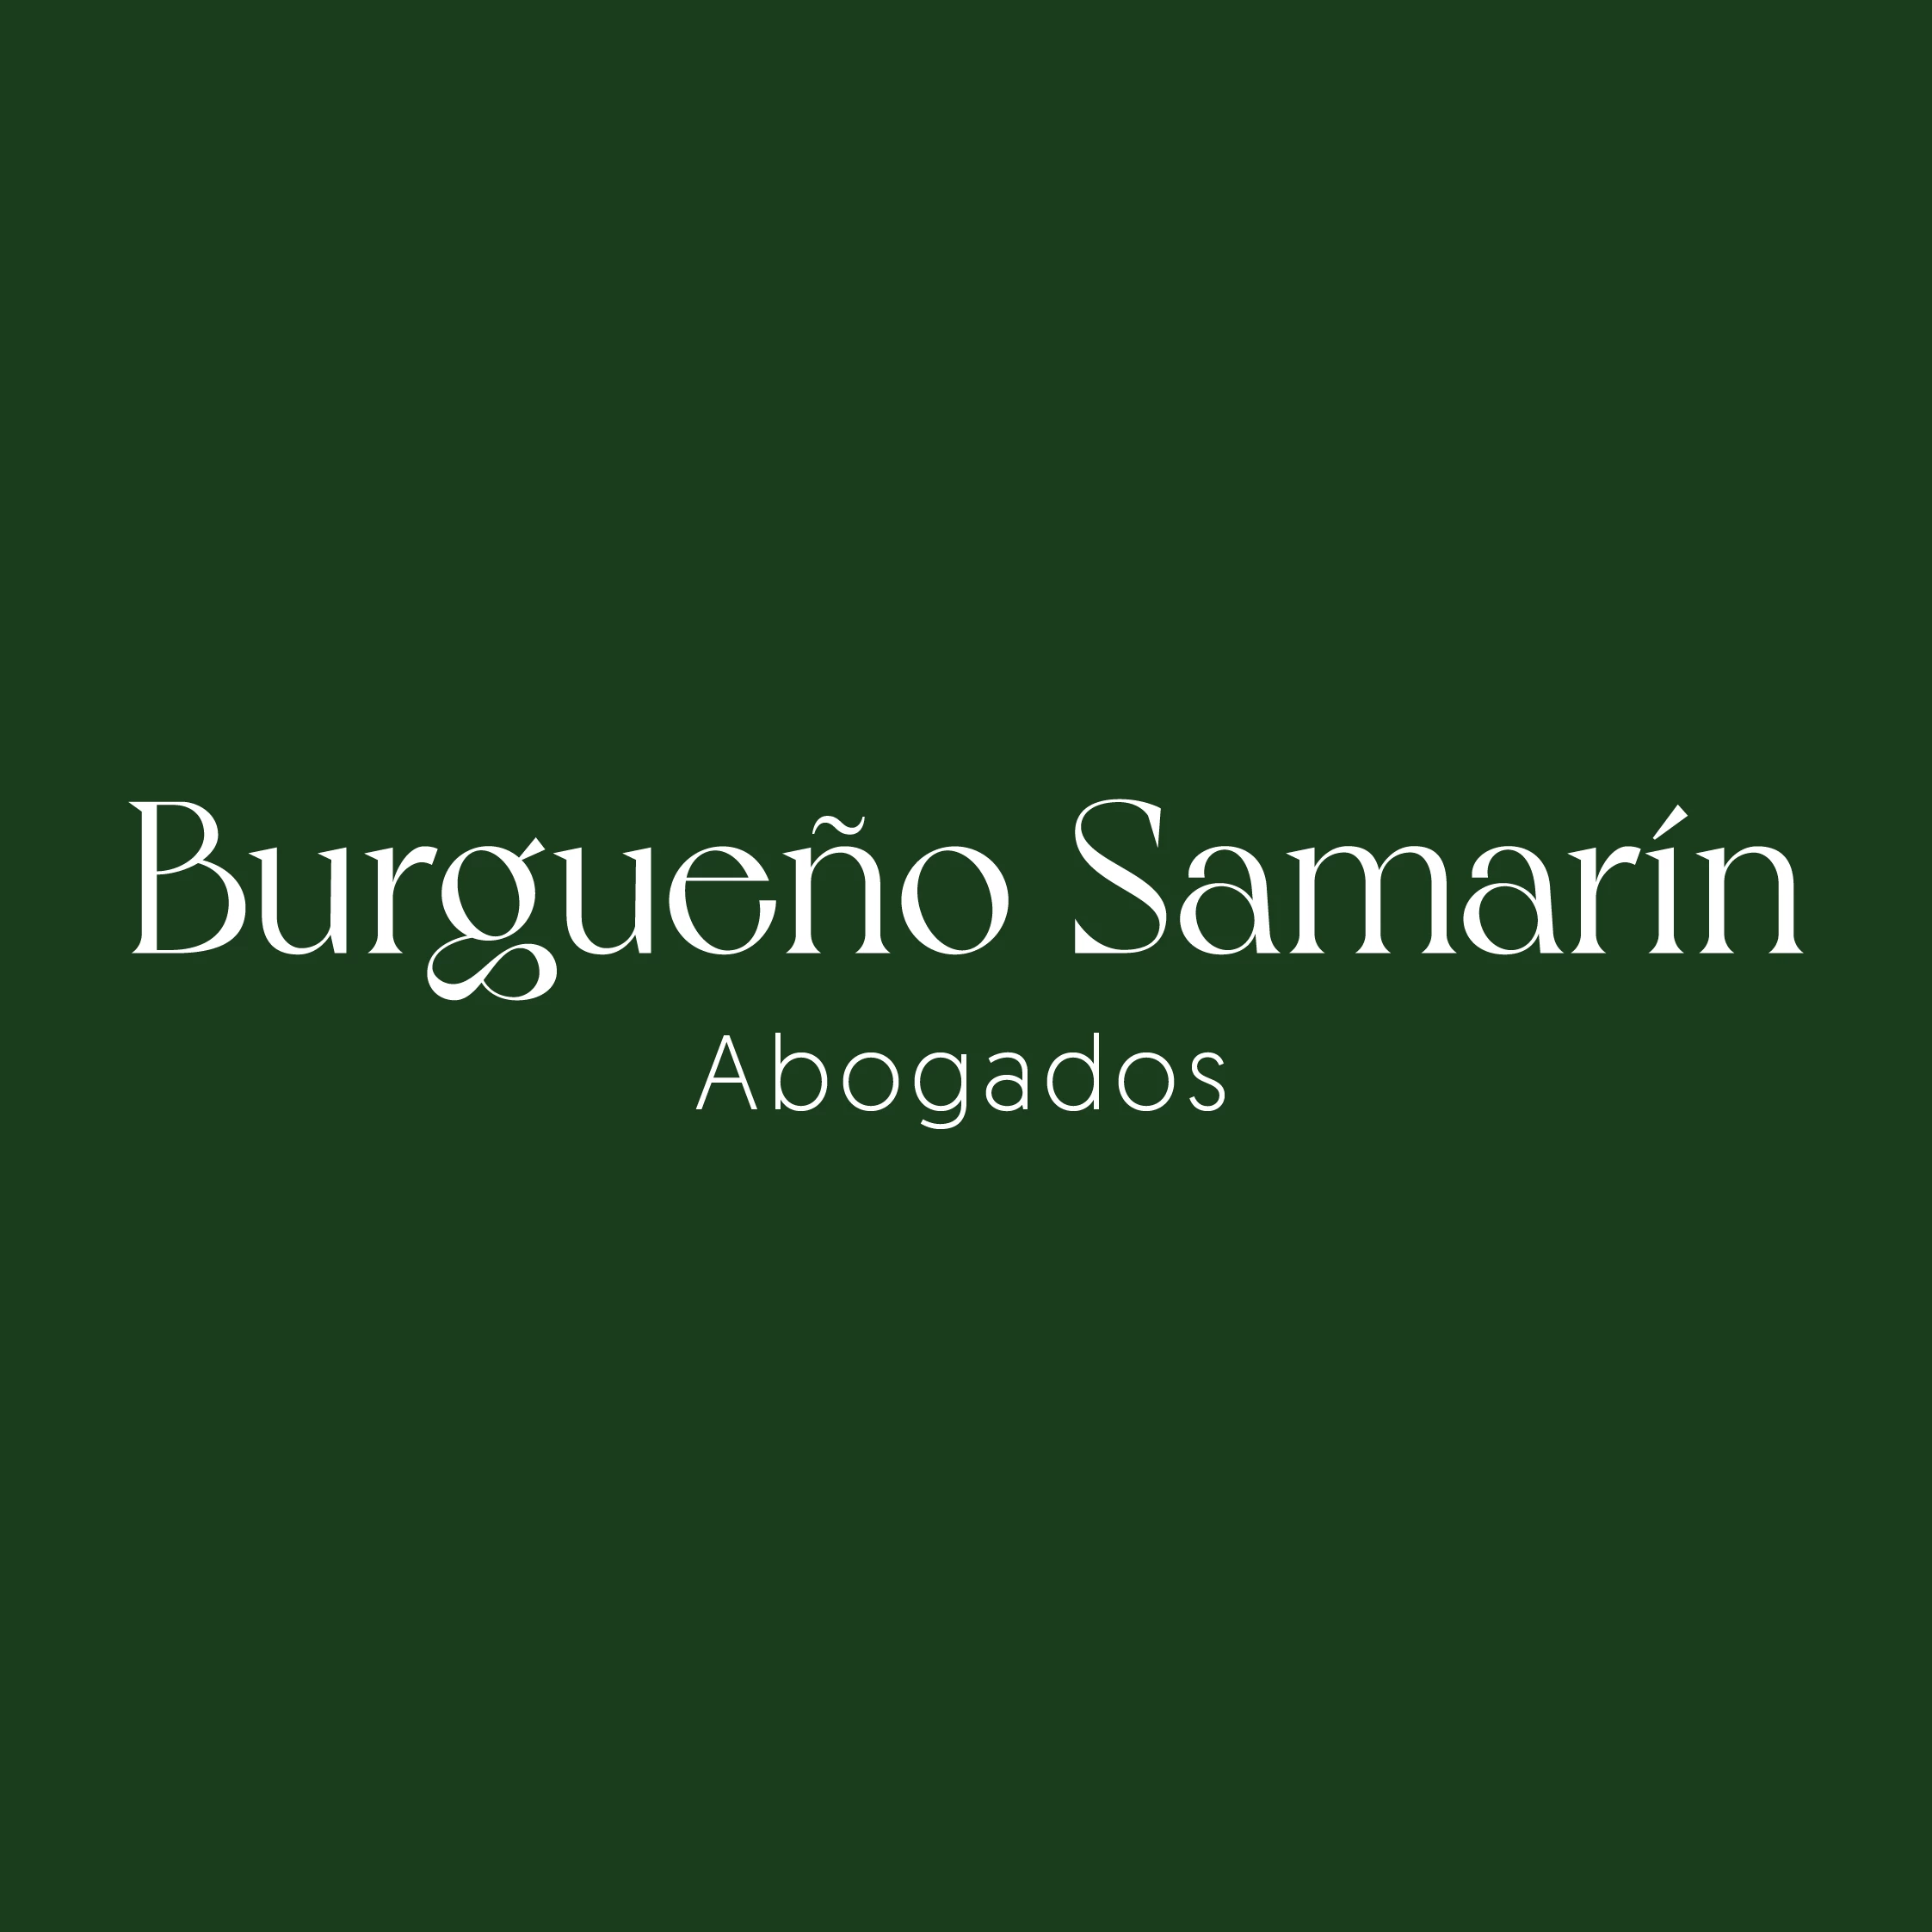 Burgueño Samarín Abogados